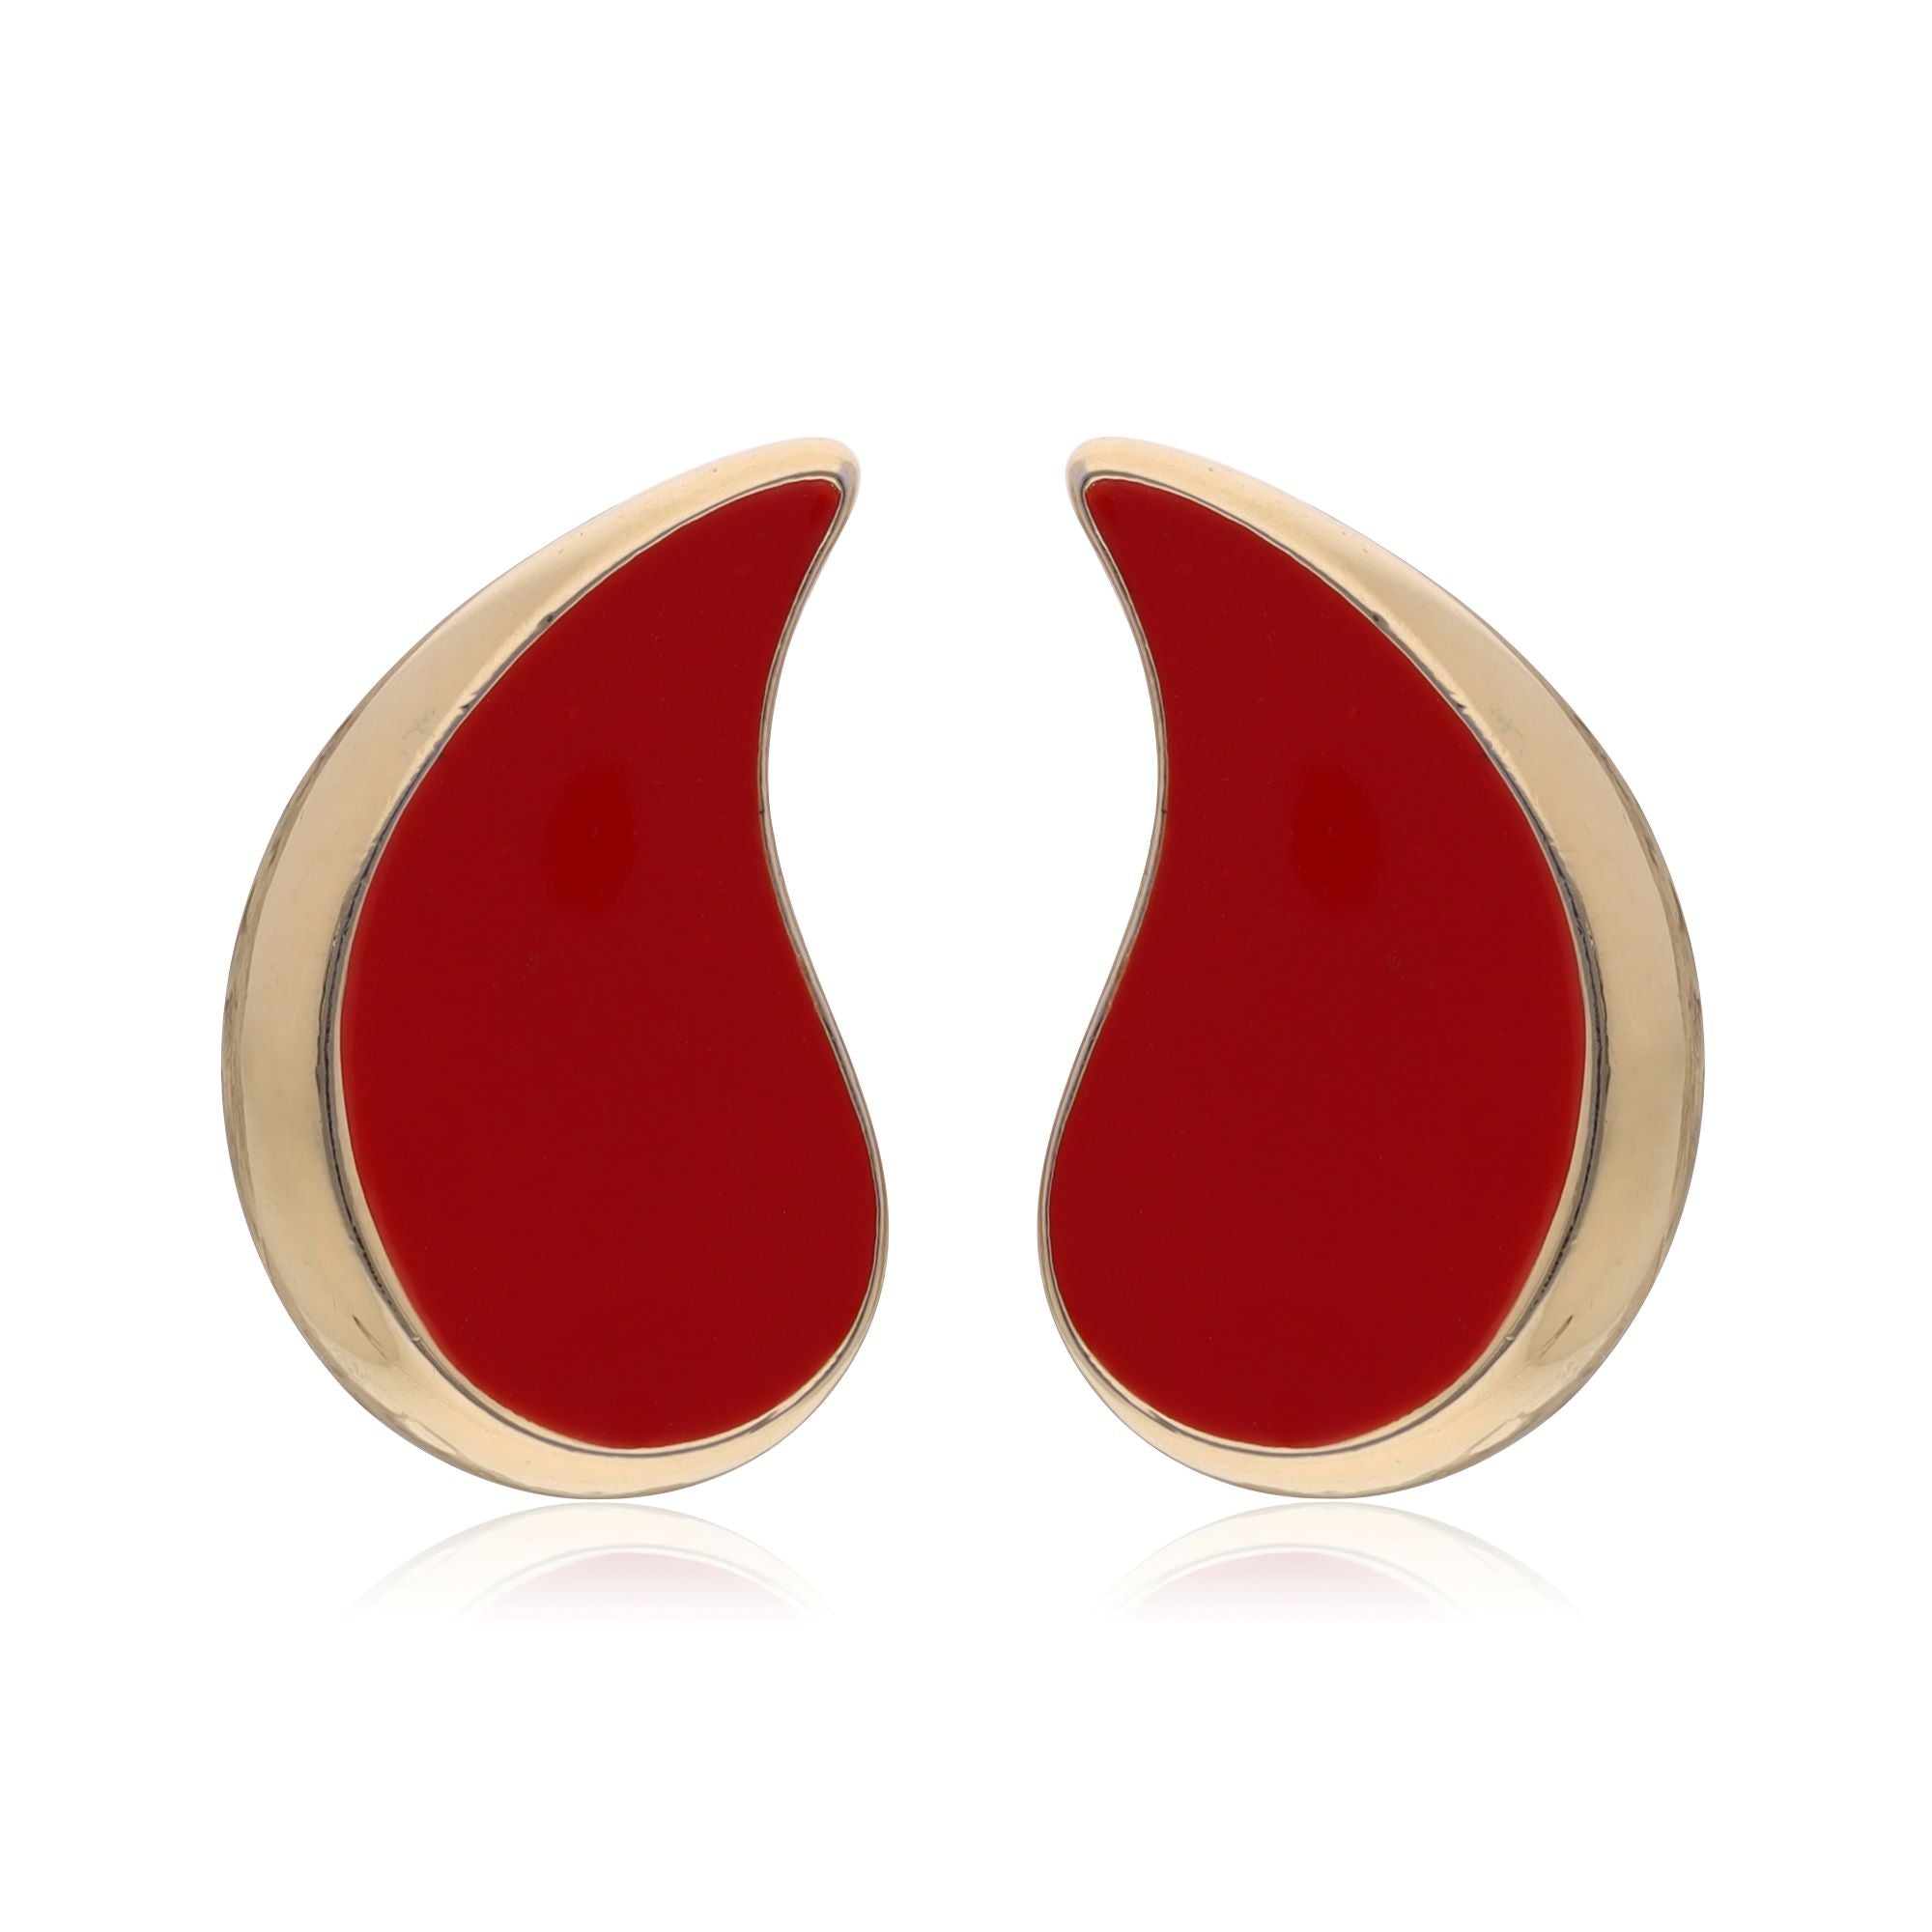 Vintage red enamel paisley earrings